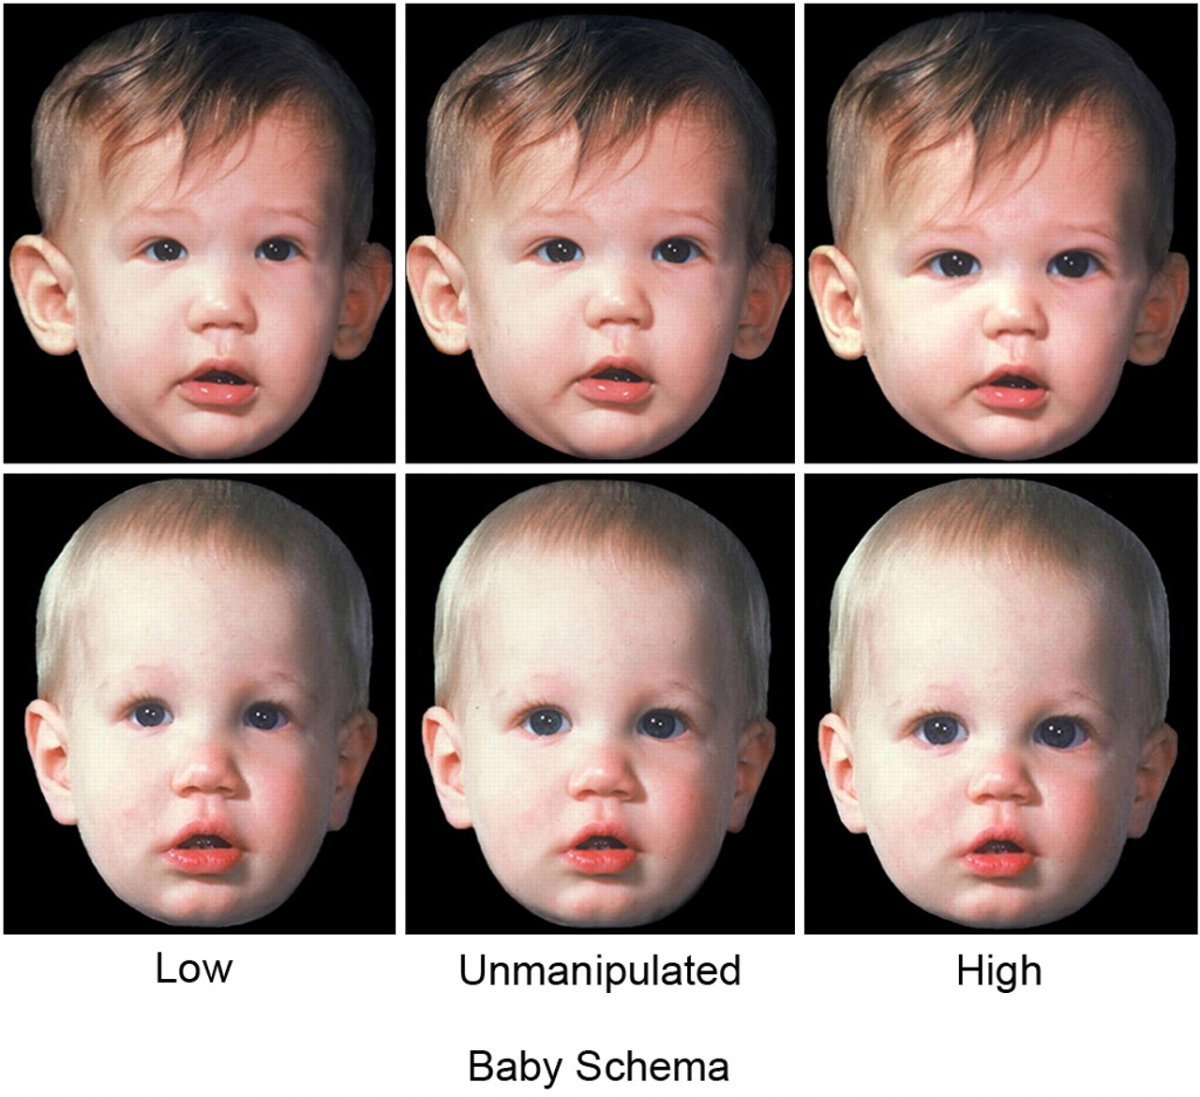 아기의  신체적 특징이 도드라진 얼굴 일수록 사람들은 귀여움을 더 많이 느끼게 된다. 미국국립과학원회보